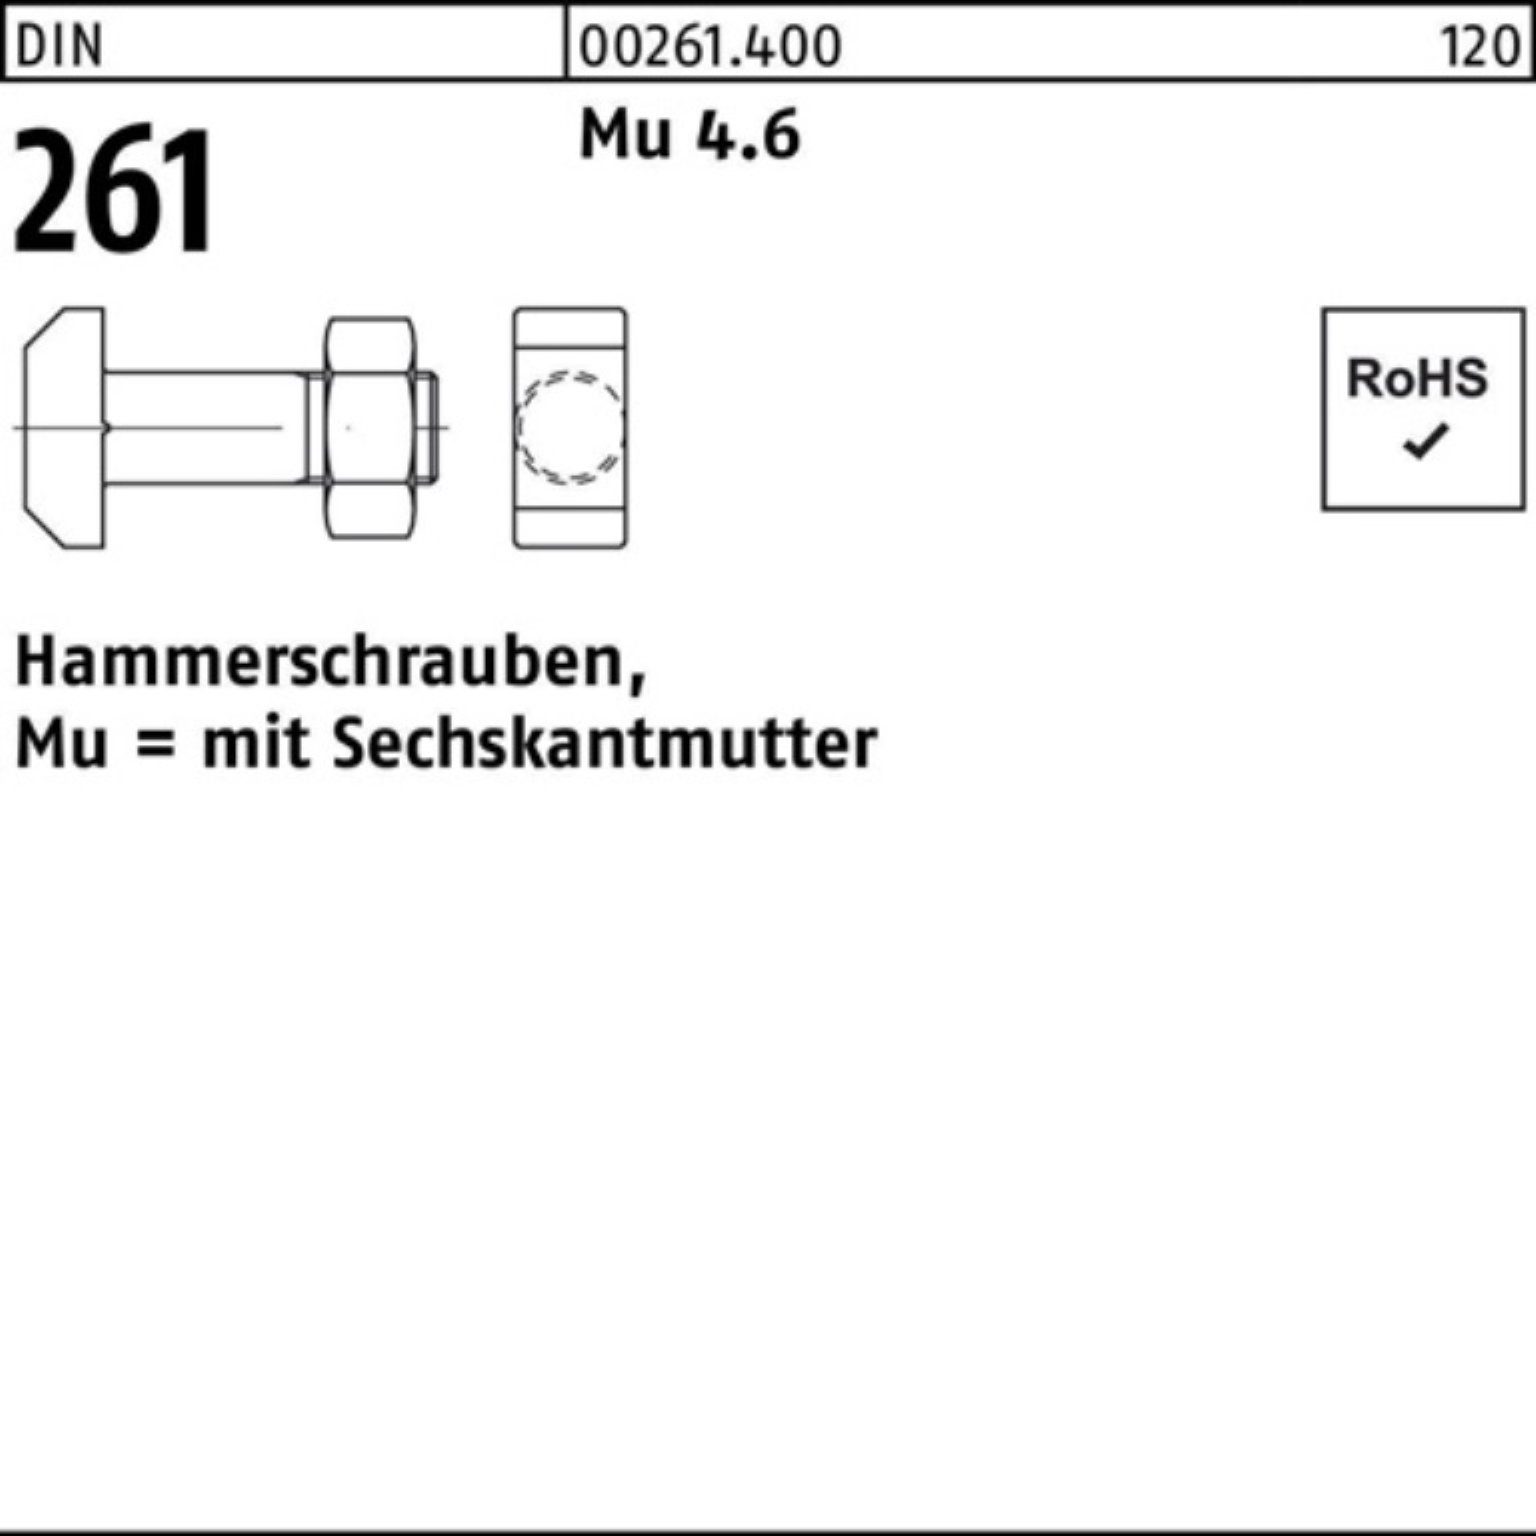 Reyher Schraube 100er St Mu 4.6 10 Pack Sechskantmutter 261 M16x DIN Hammerschraube 70